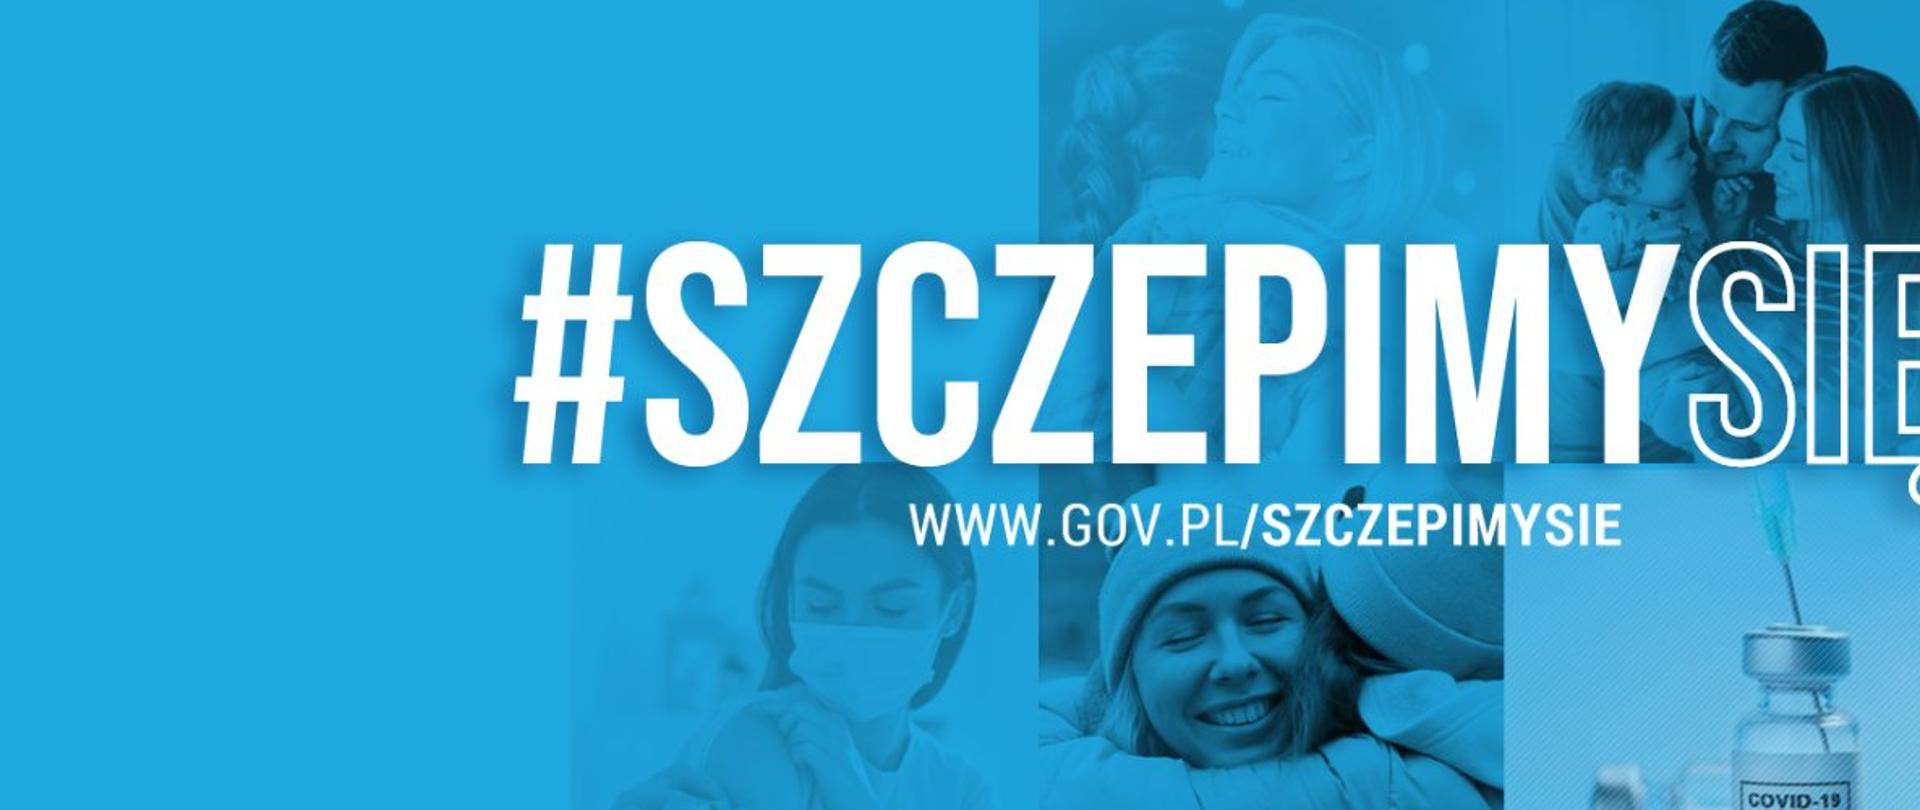 logo kampanii szczepimy się: na niebieskim tle widać postaci ludzi oraz szczepionkę w specjalnym pojemniku